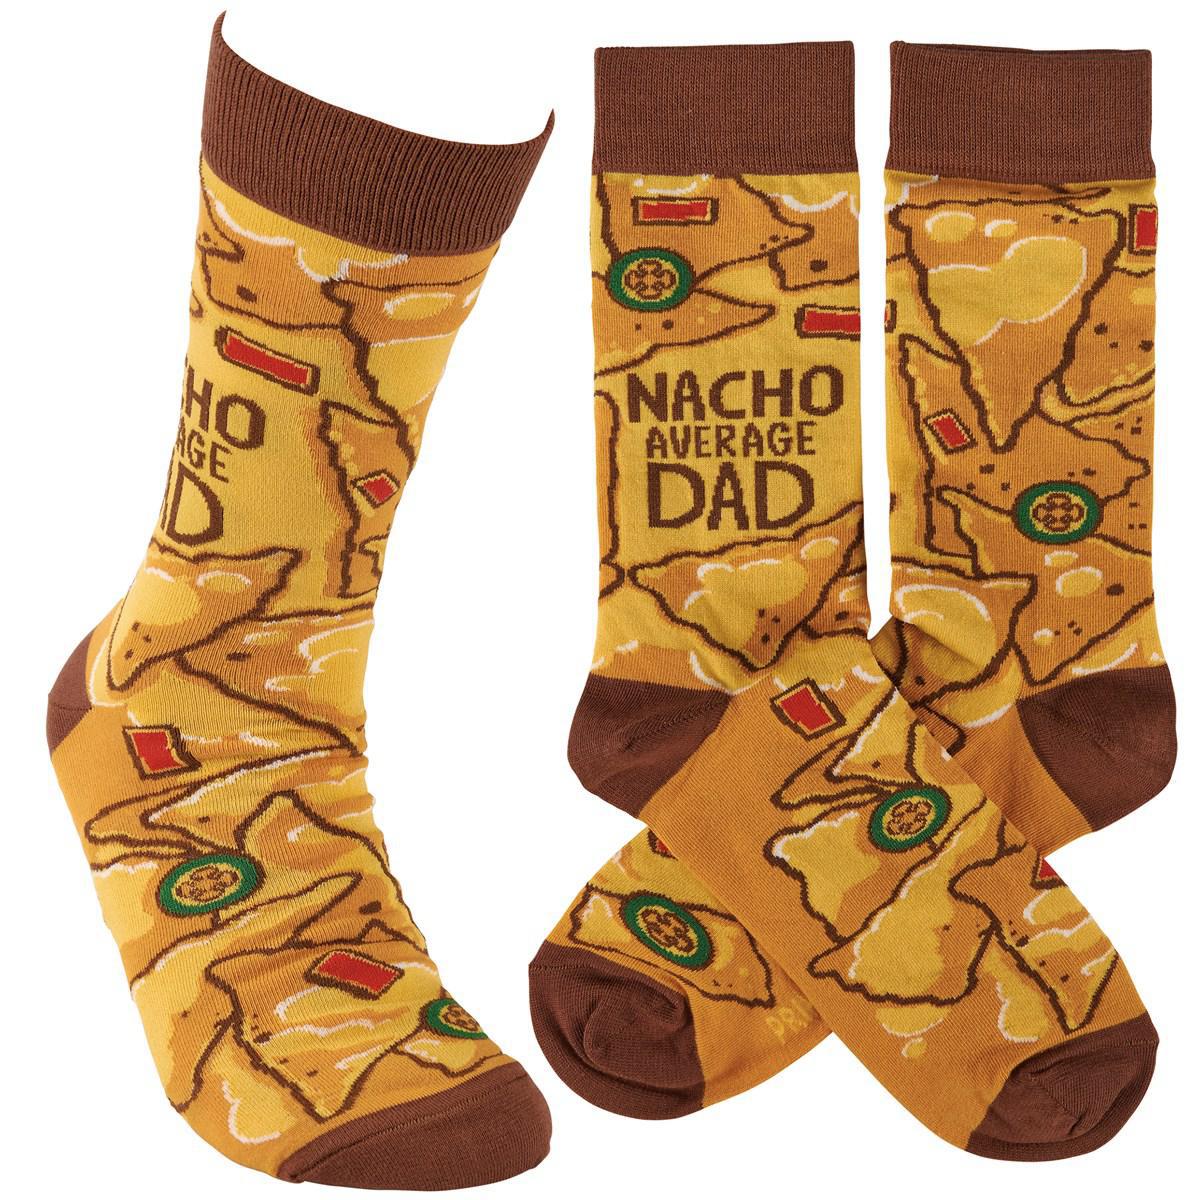 Nacho Average Dad Socks